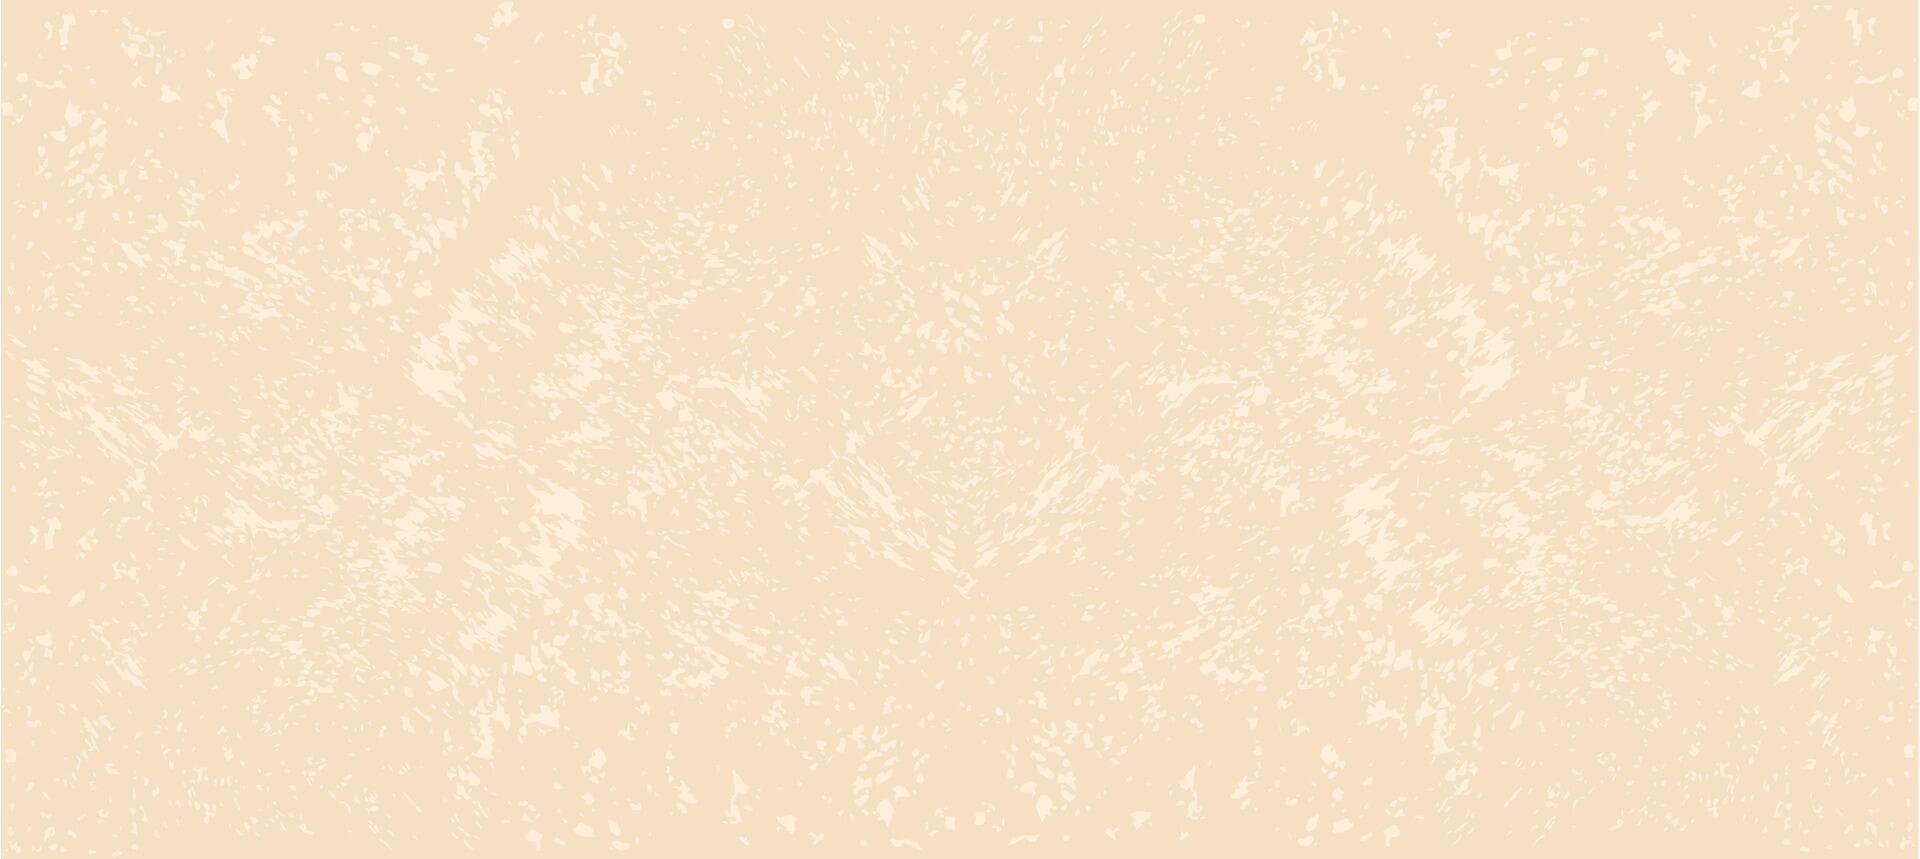 Reis Papier. Vektor Lager Illustration. Jahrgang Grunge Hintergrund mit Punkte und Sprenkel. minimalistisch körnig Eierschale Papier Textur.